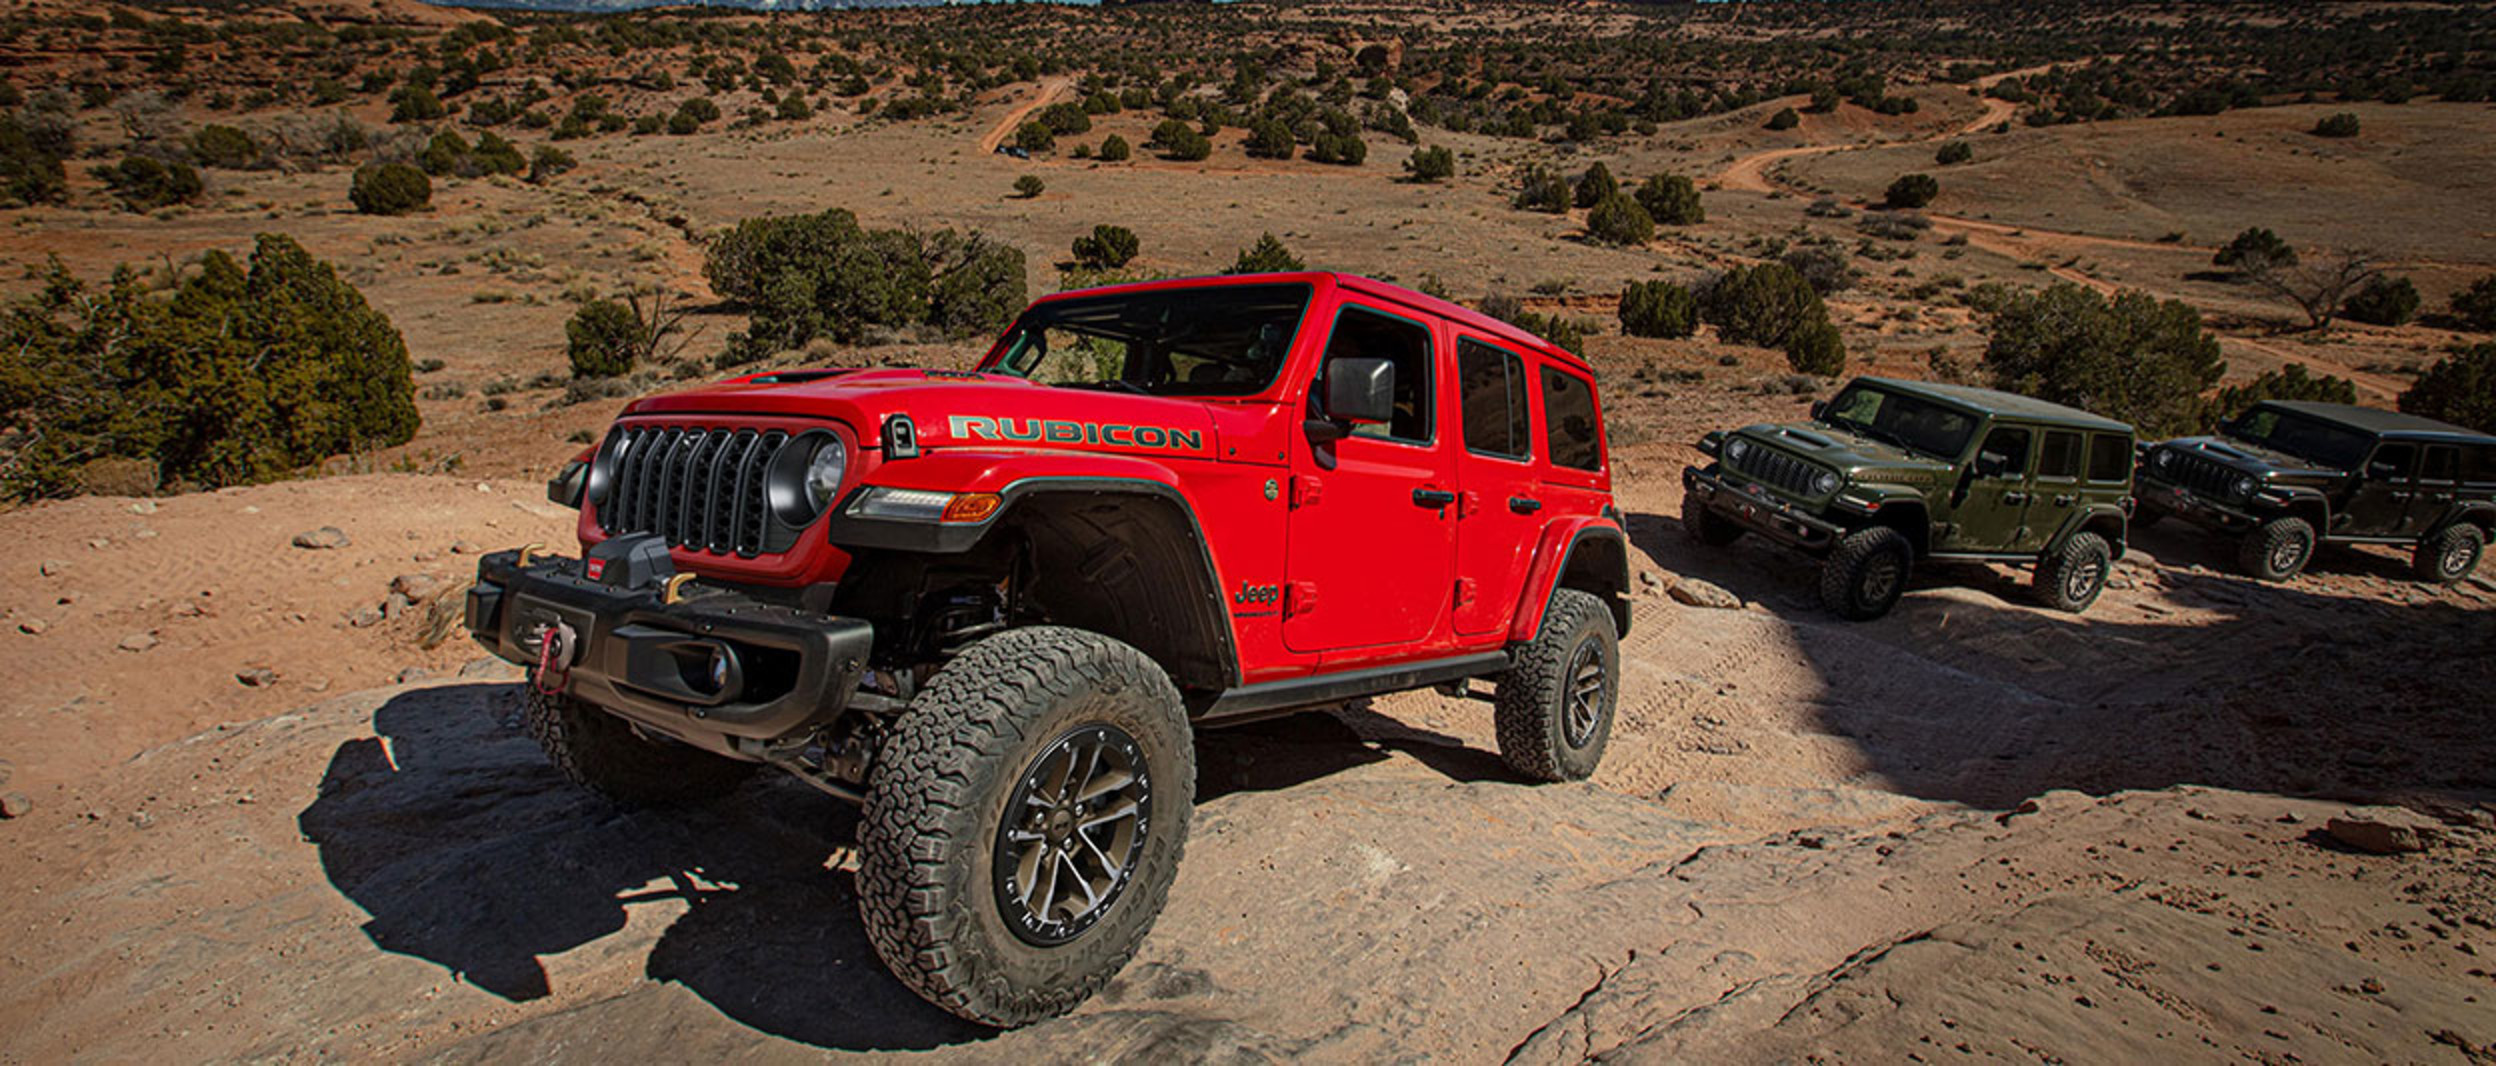 Vue inclinée d'une Jeep Rubicon rouge montrée en montée sur un terrain rocheux avec deux autres modèles de Jeep qui suivent derrière.